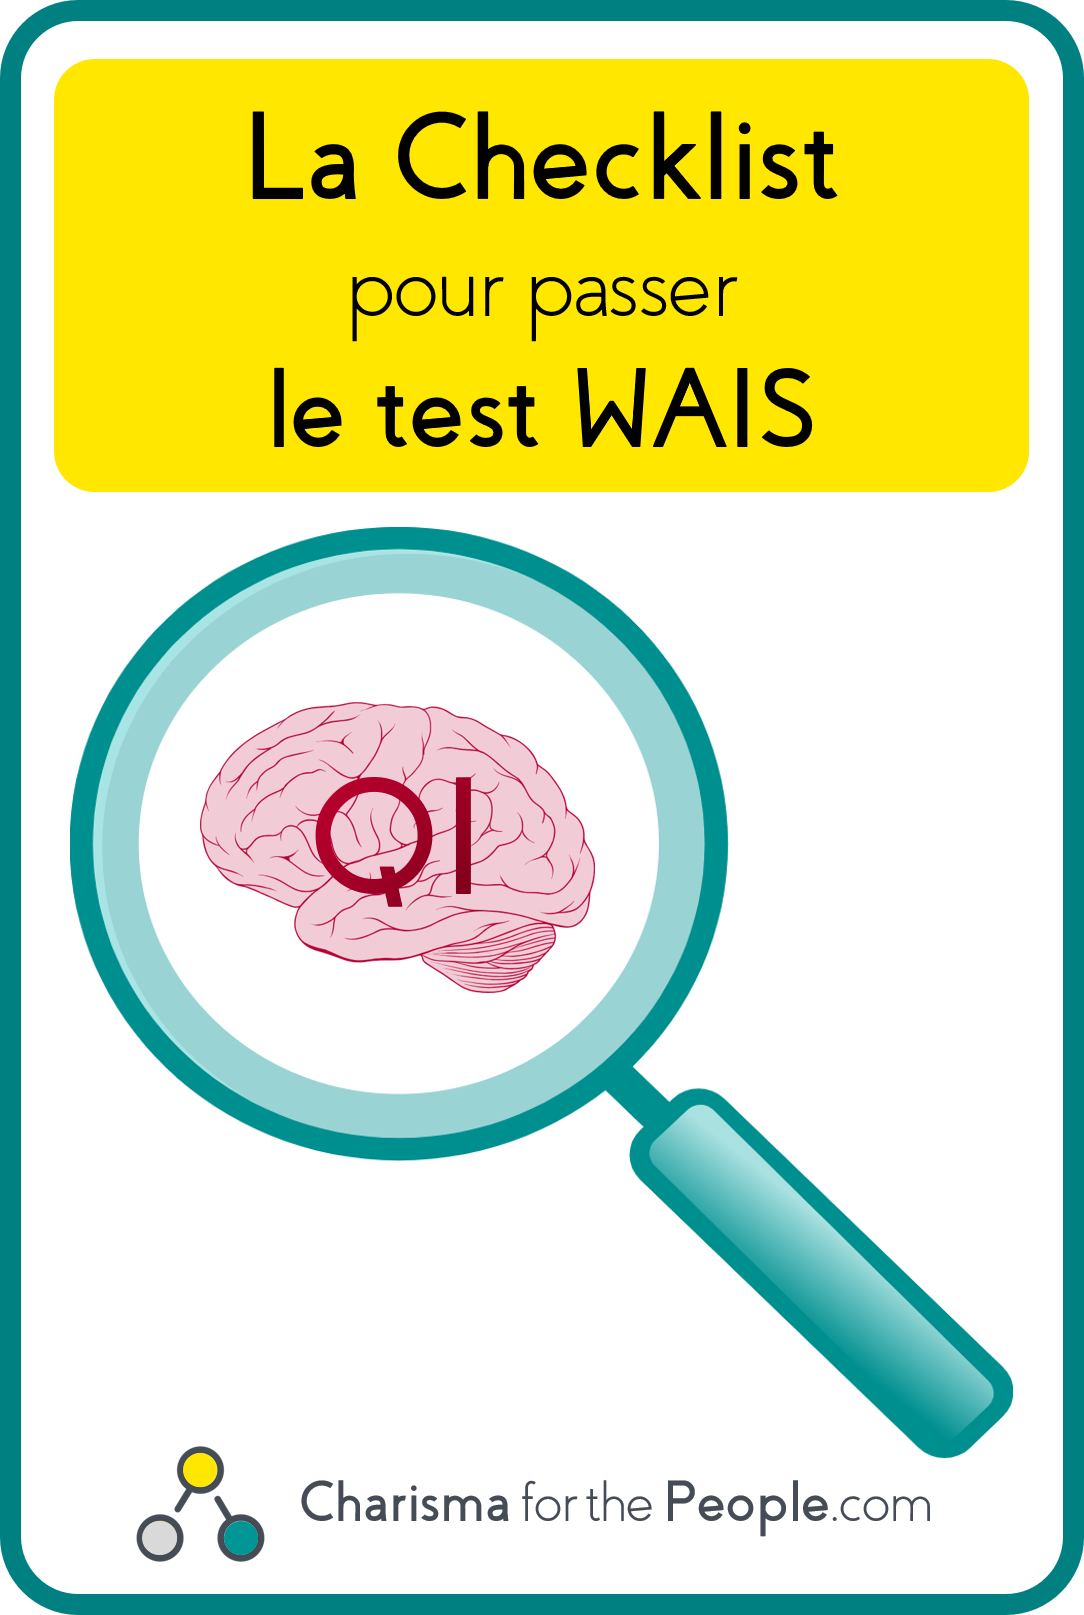 La Checklist pour passer le test WAIS